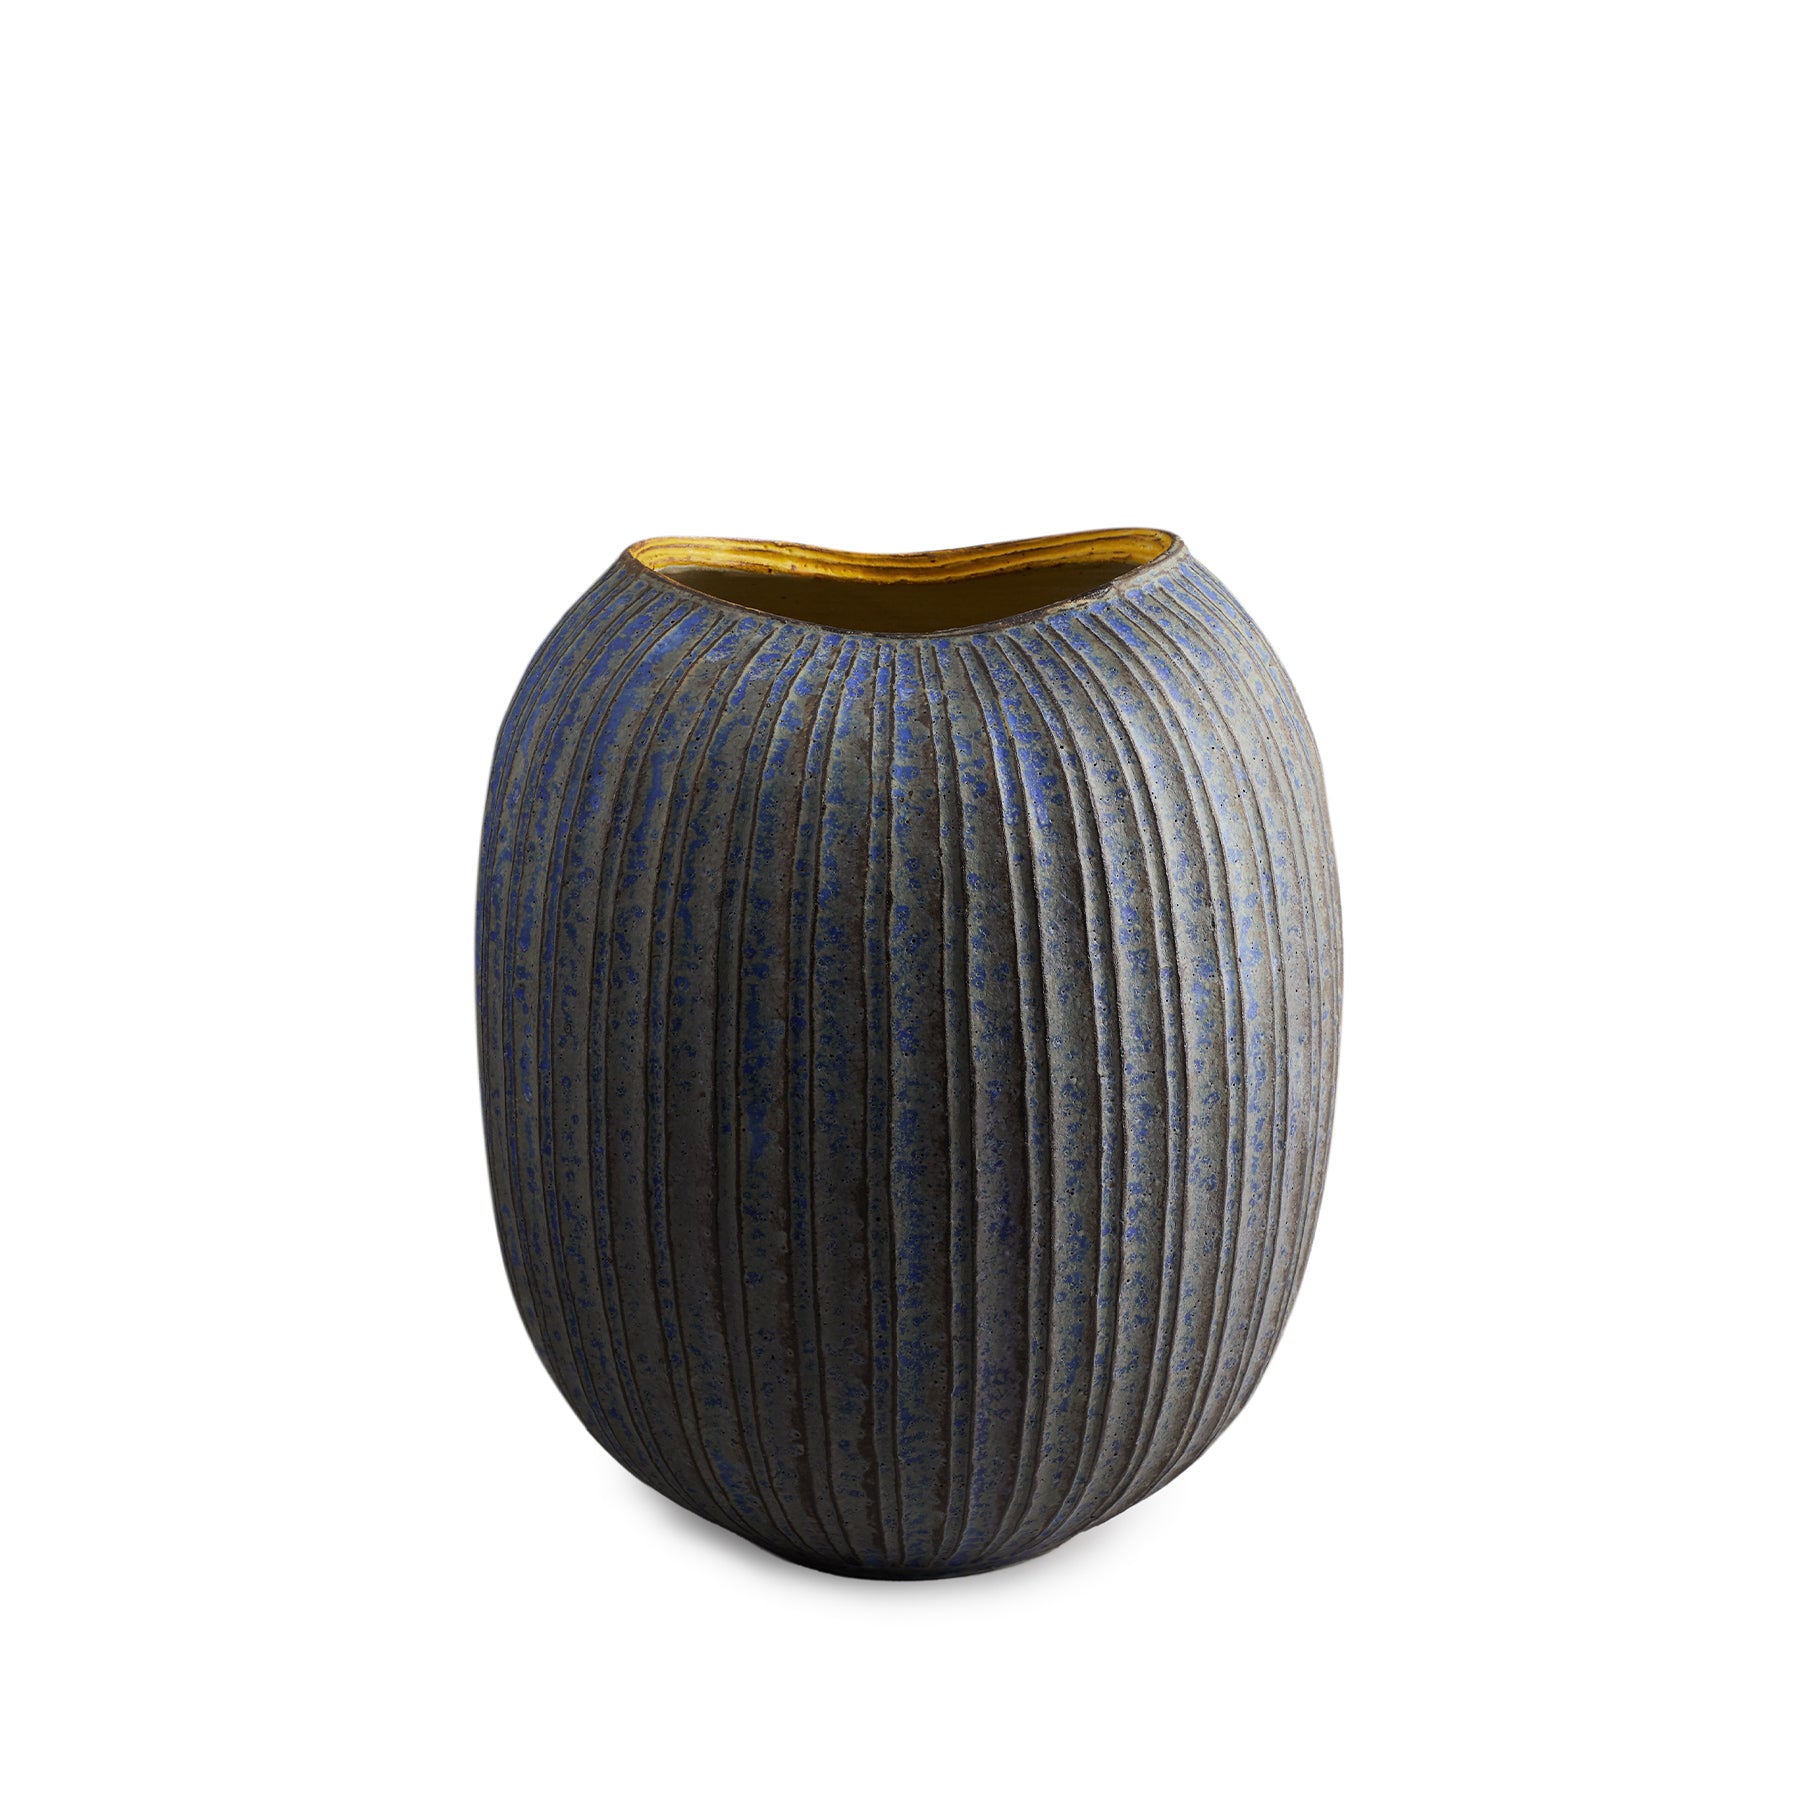 #30 Large Potbelly Vase in Indigo Zoom Image 1